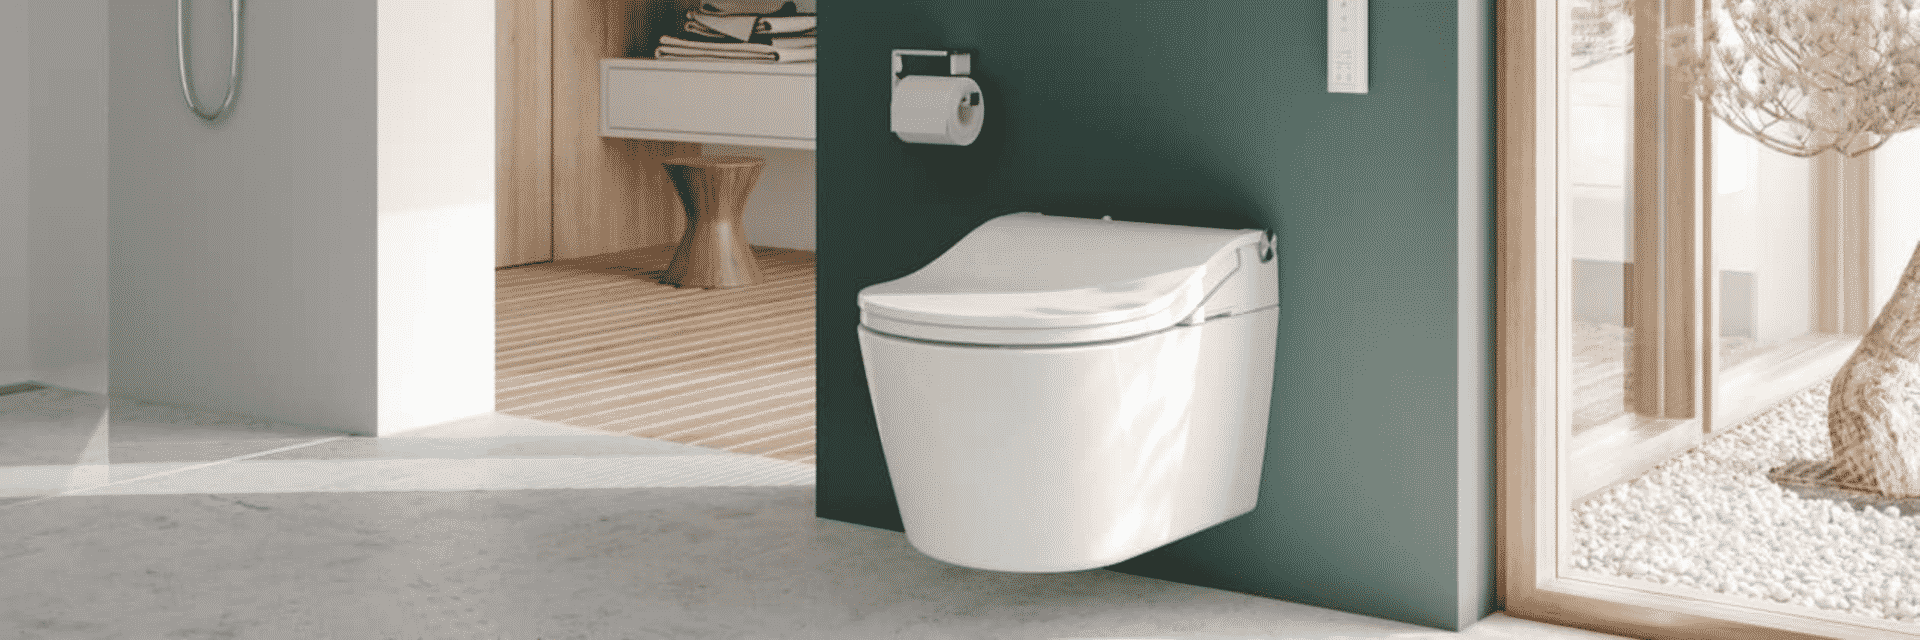 WC japonais avec douchette, WC Toto japonais - ATD Home